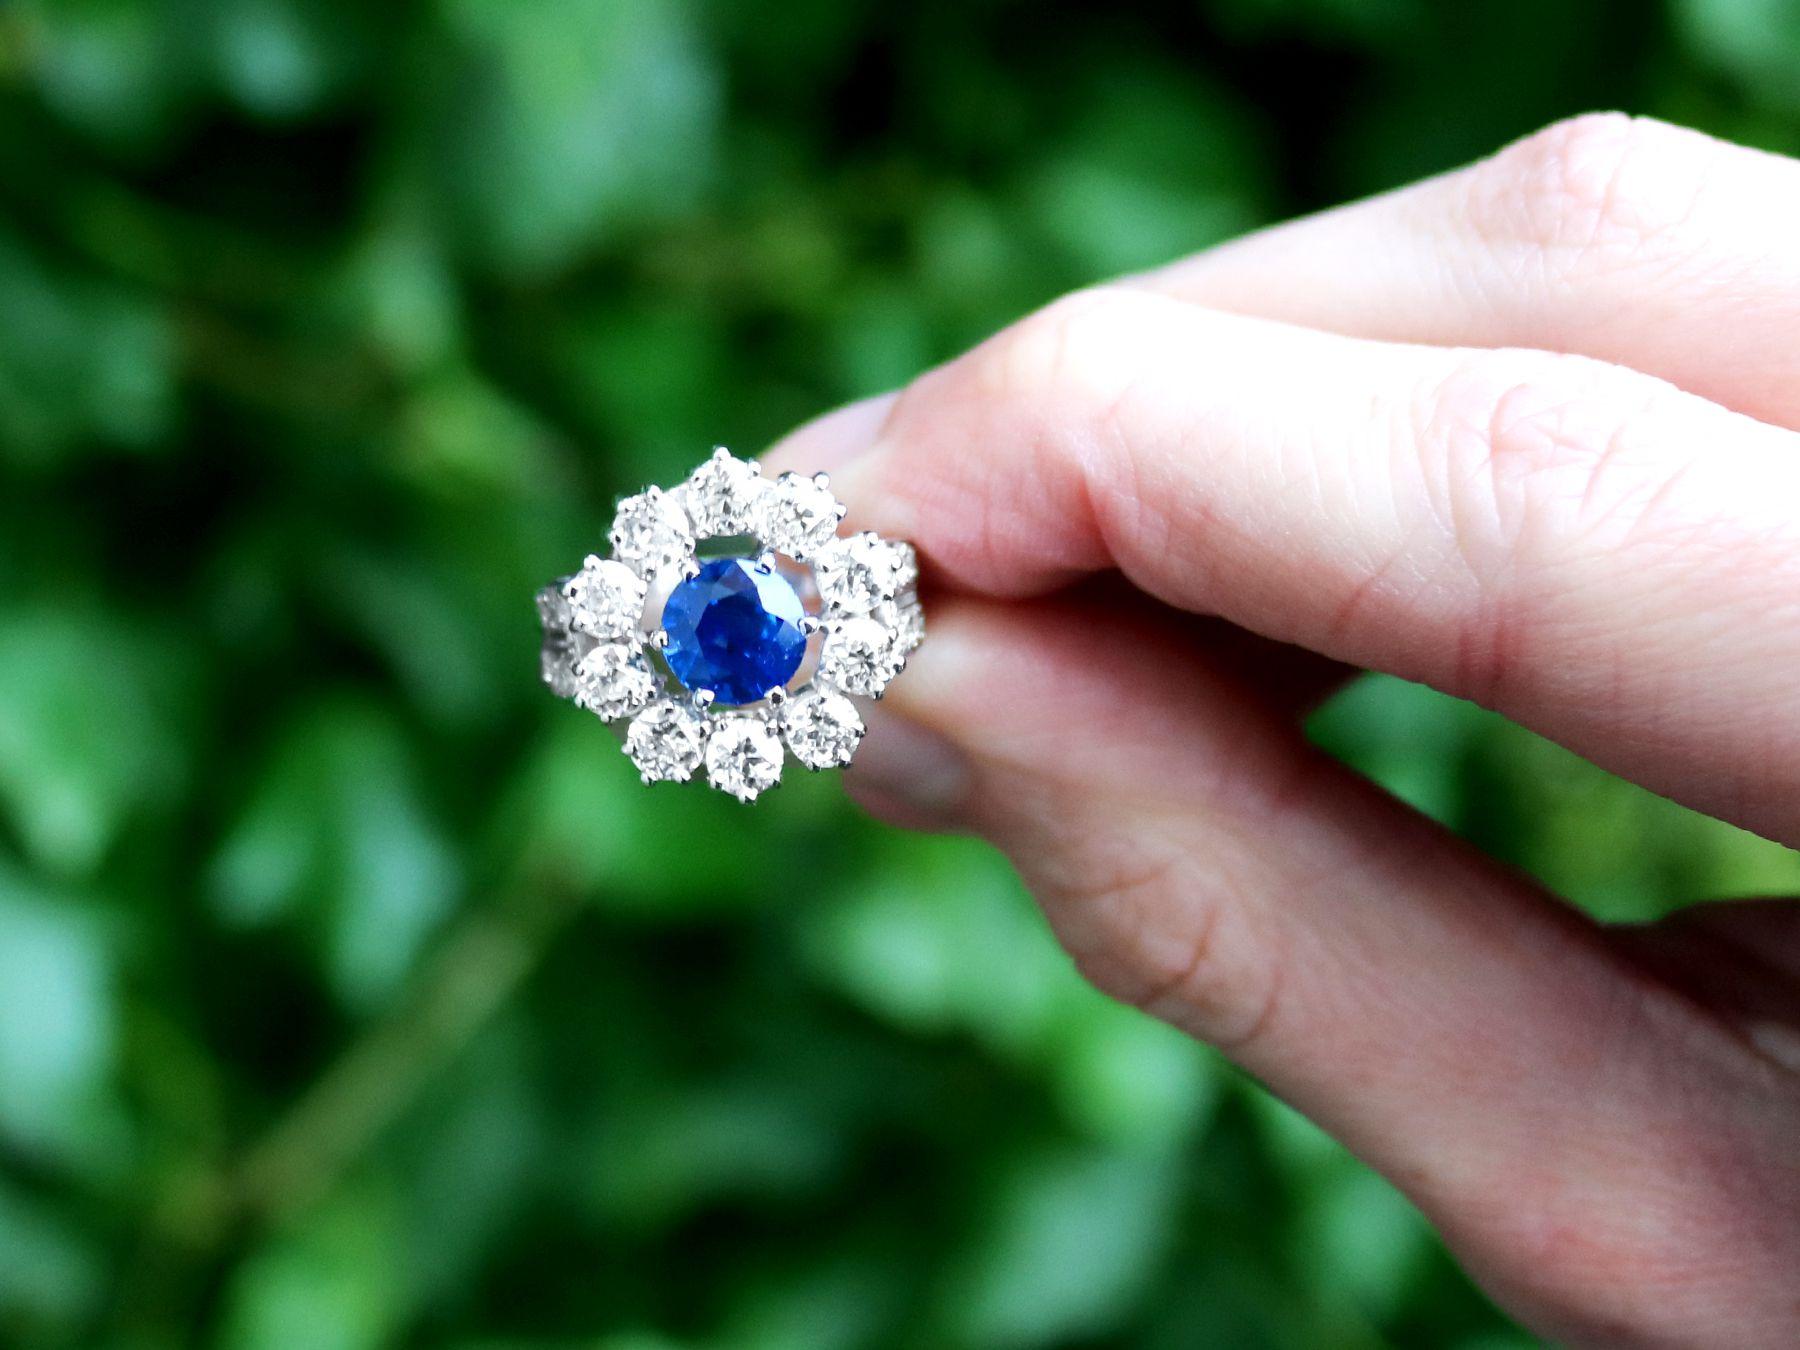 Ein atemberaubender, feiner und beeindruckender 1,66 Karat Saphir und 1,90 Karat Diamant Platin-Cluster-Ring; Teil unserer vielfältigen antiken Schmuck und Estate Jewelry-Kollektionen.

Dieser atemberaubende und beeindruckende Vintage-Ring mit